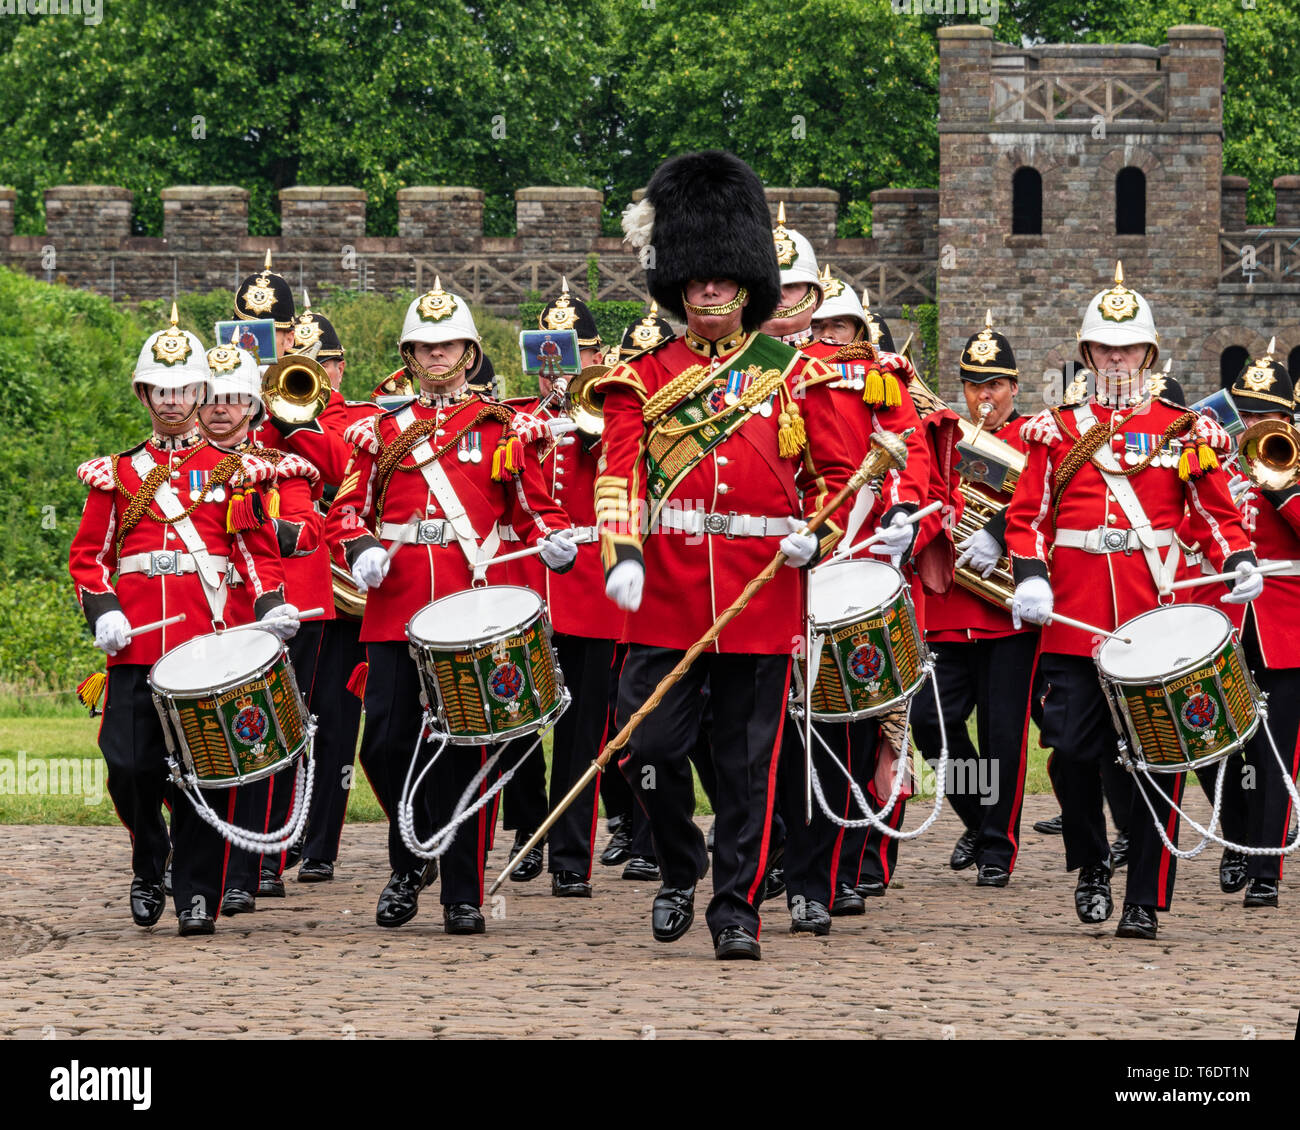 Royaume-uni, Cardiff - 09 juin 2018 - Band of the Royal Welsh prenant part à l'anniversaire officiel de la reine Elizabeth II - Batterie Banque D'Images